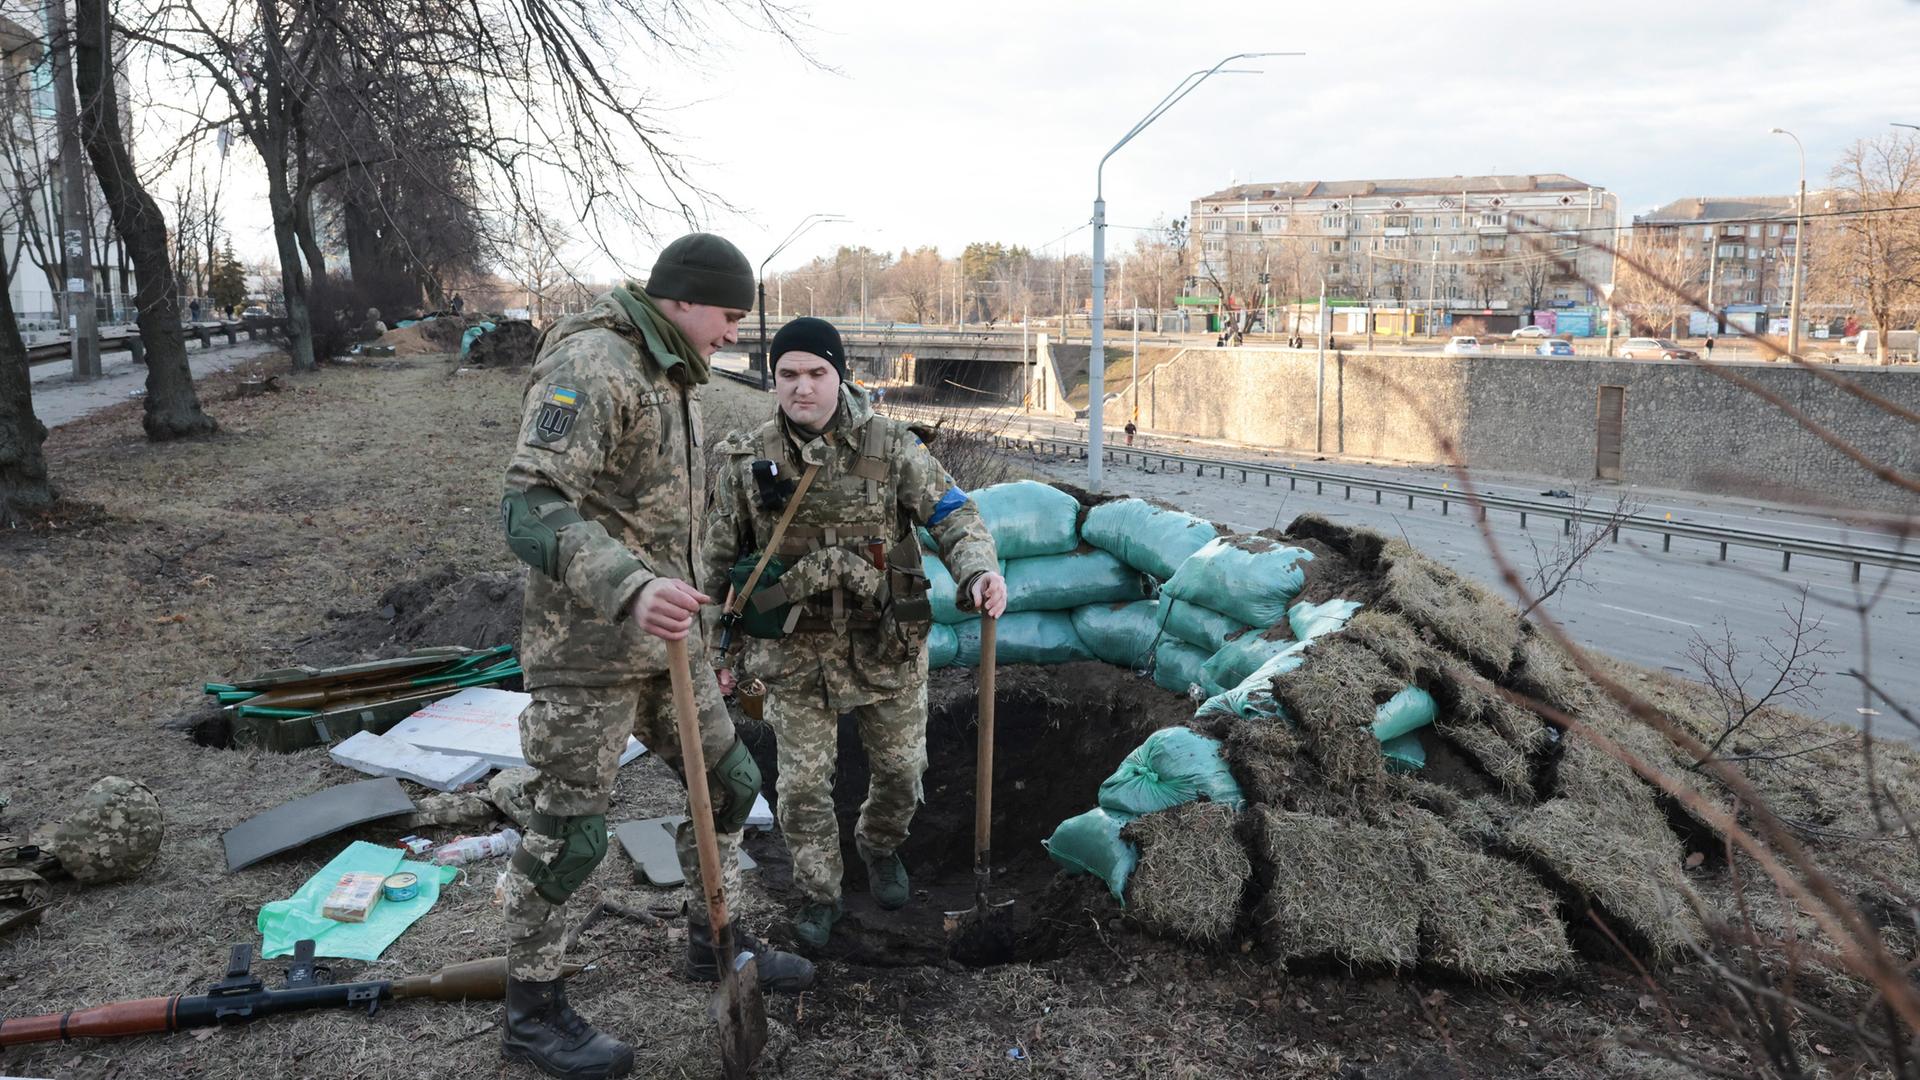 Ukrainische Soldaten in Kiew